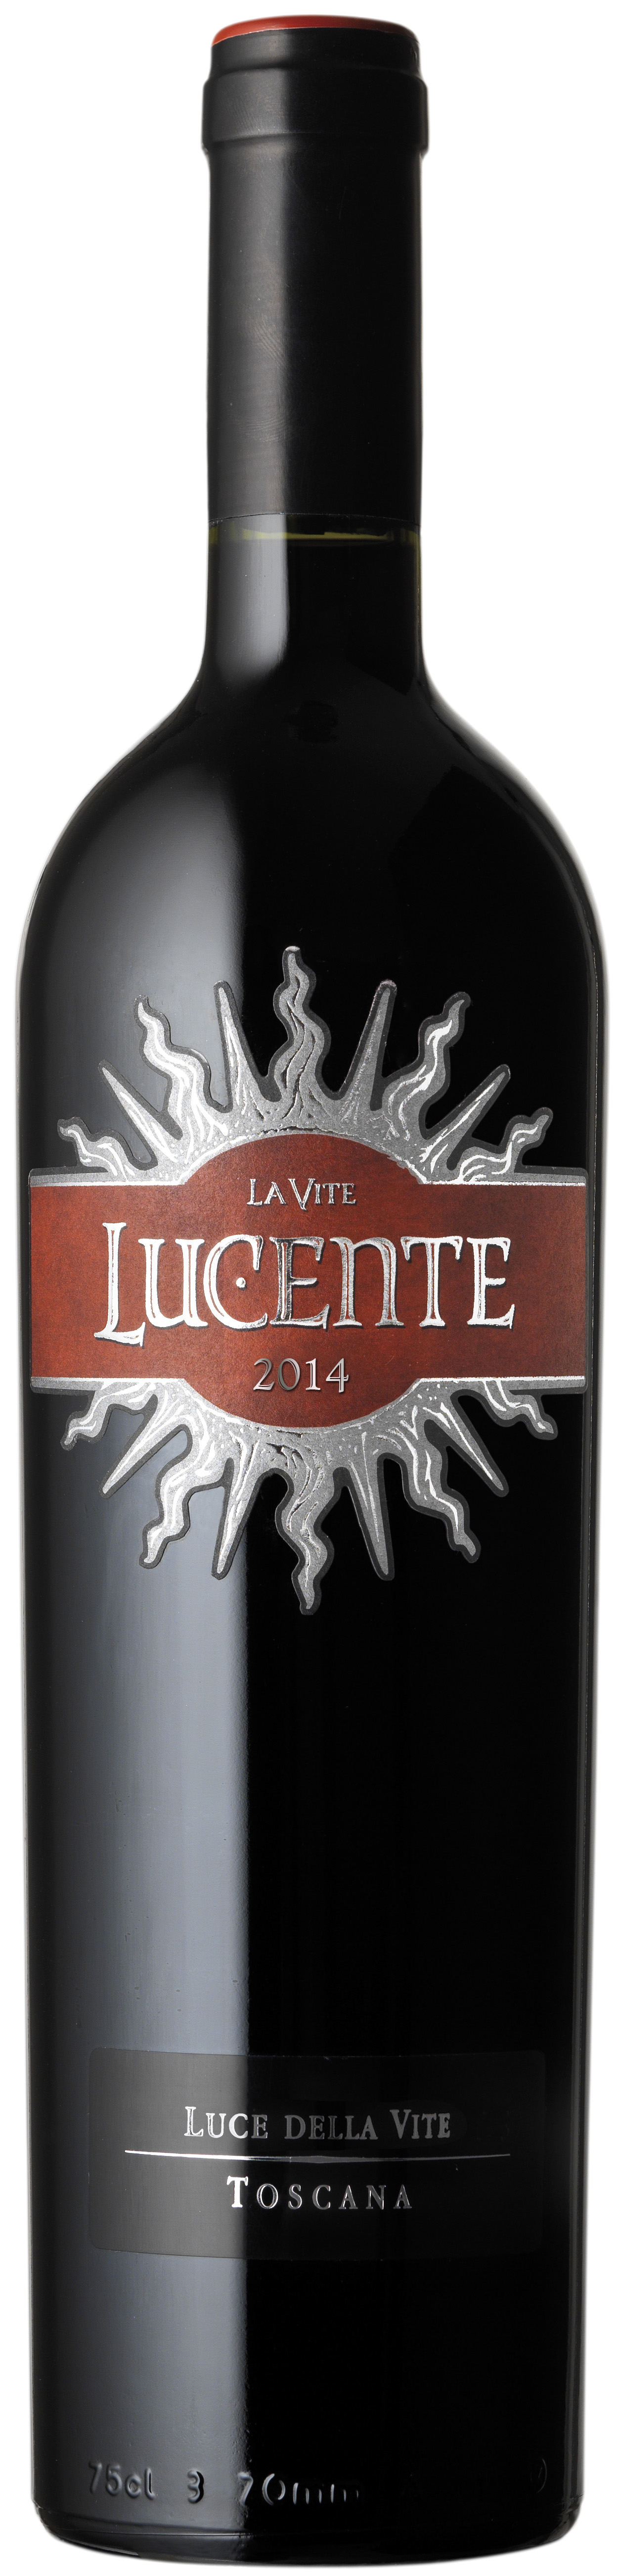 LUCE DELLA VITE 'Lucente' 2014 - International Wine Report